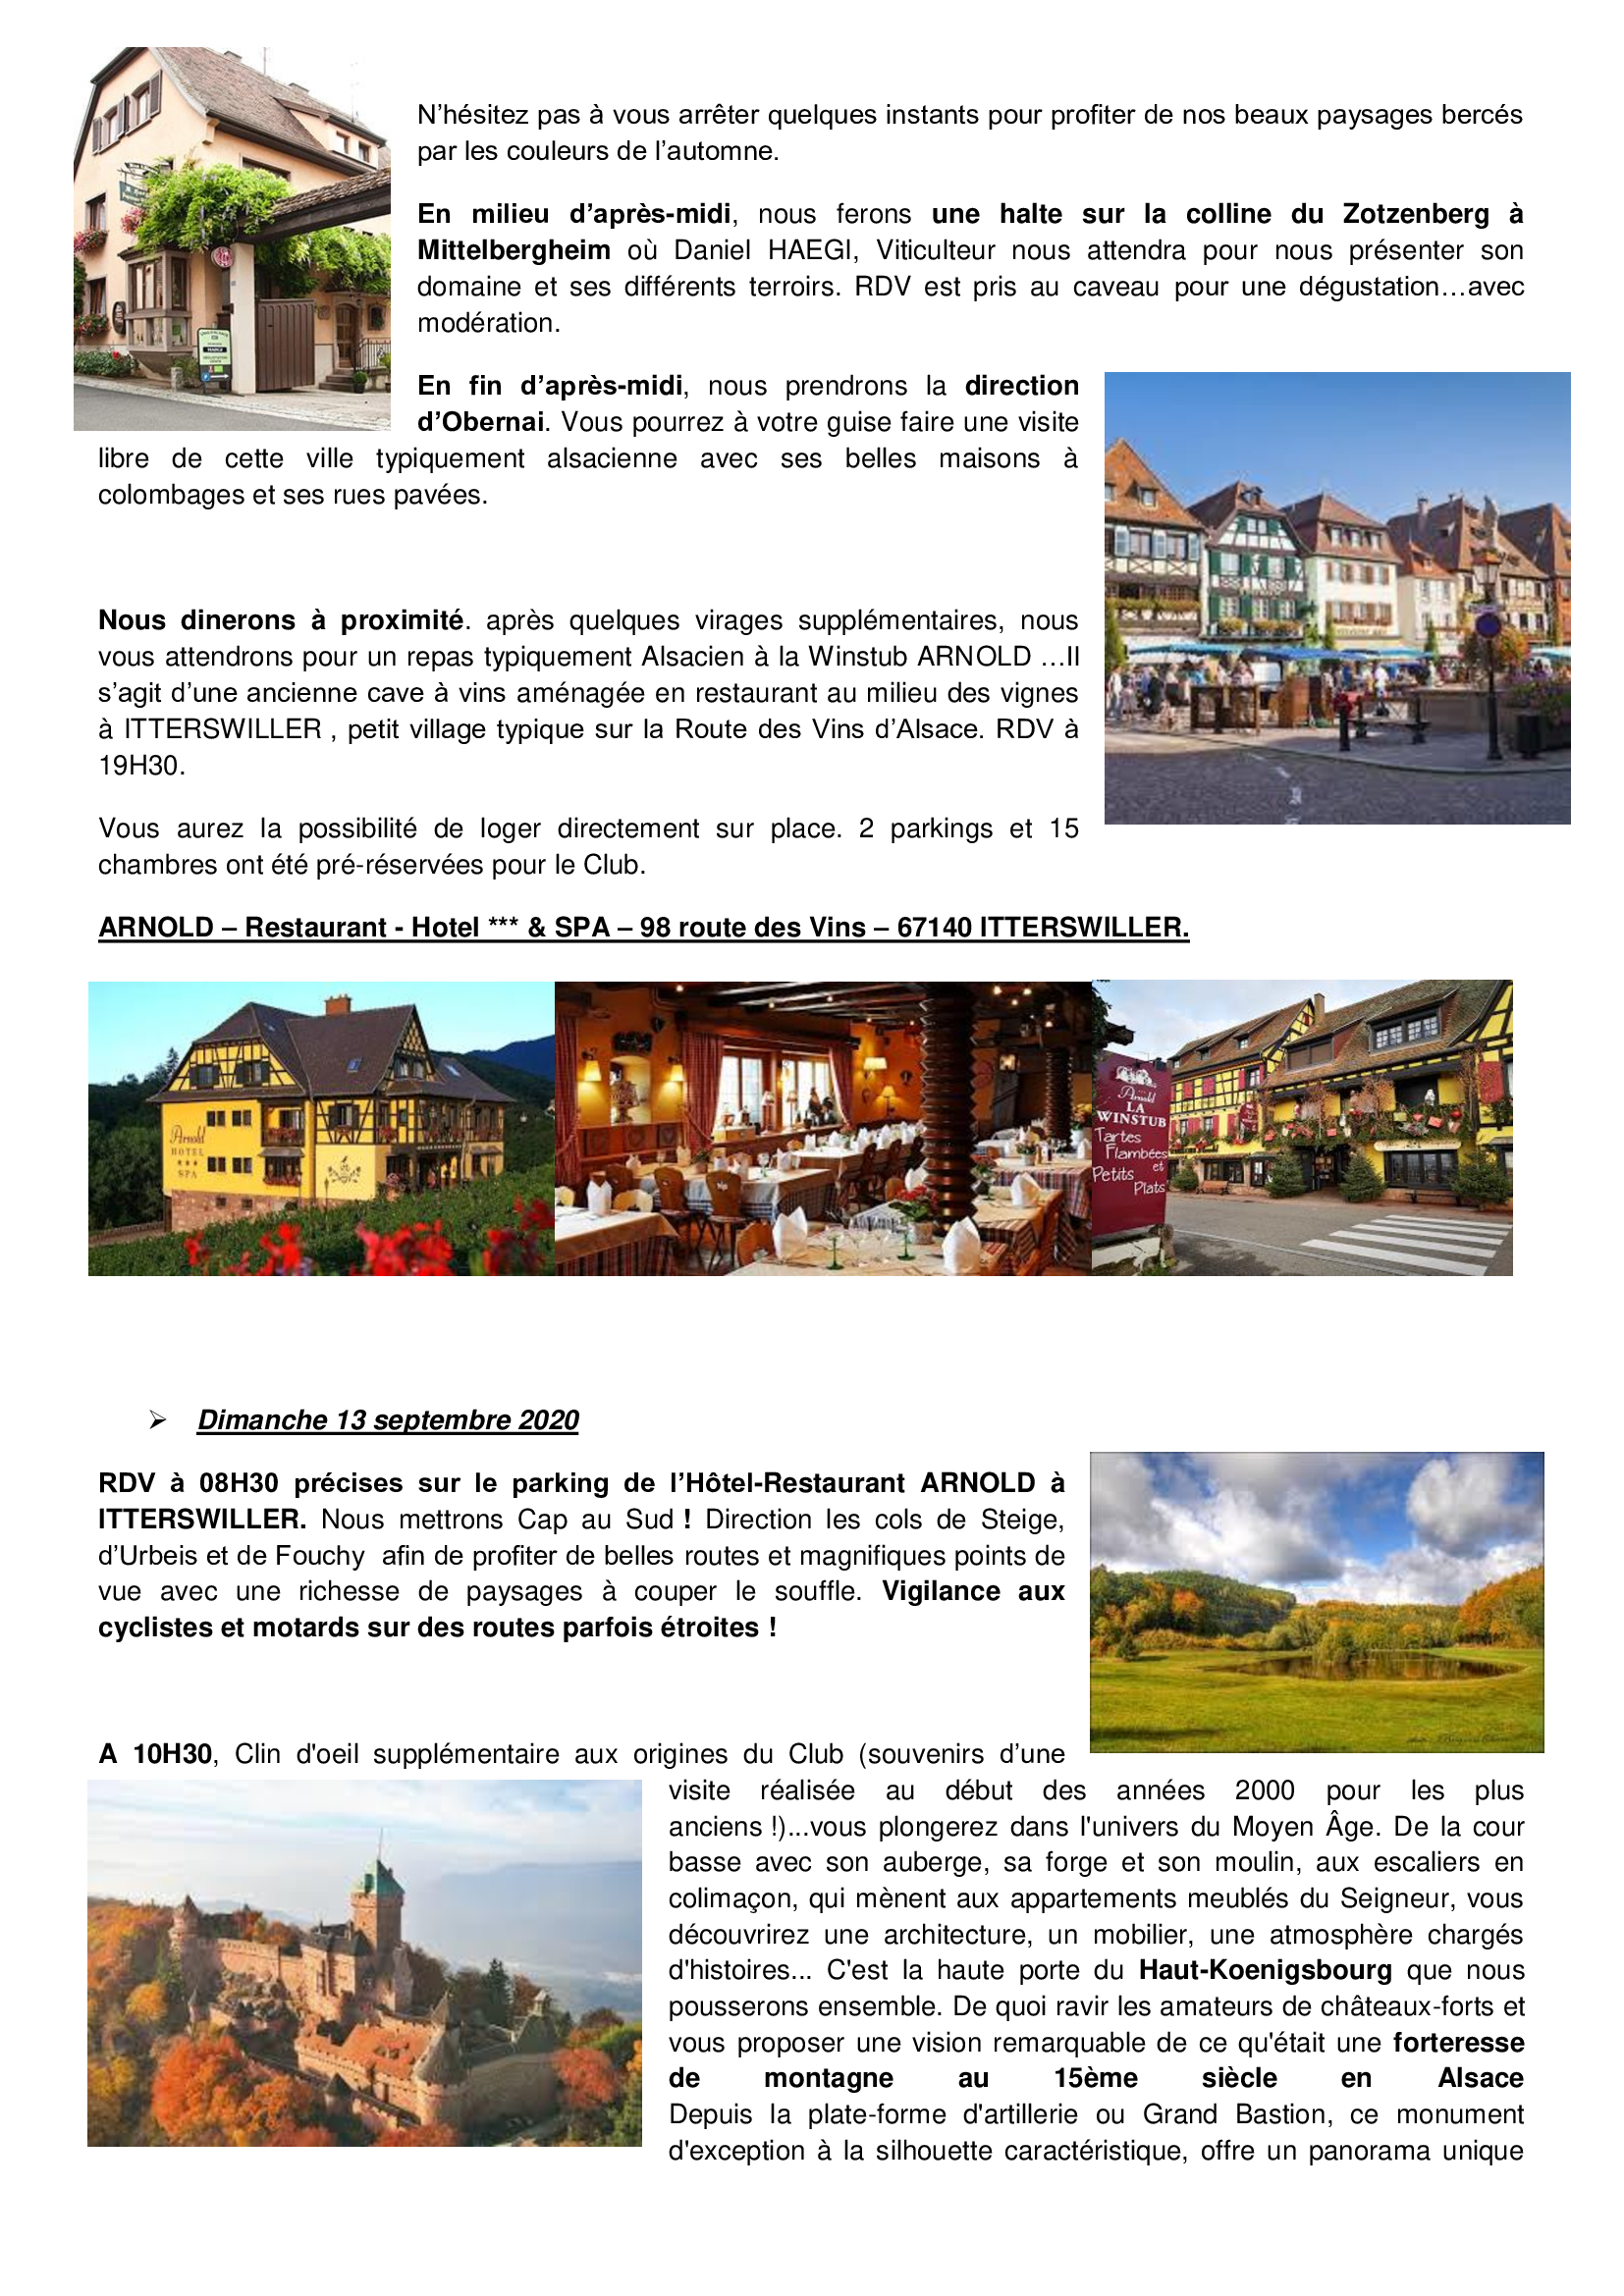 Sortie Alsace - 20ème Anniversaire du Club - 12/13 sept 2020 - Page 2 20073110254221506916944063